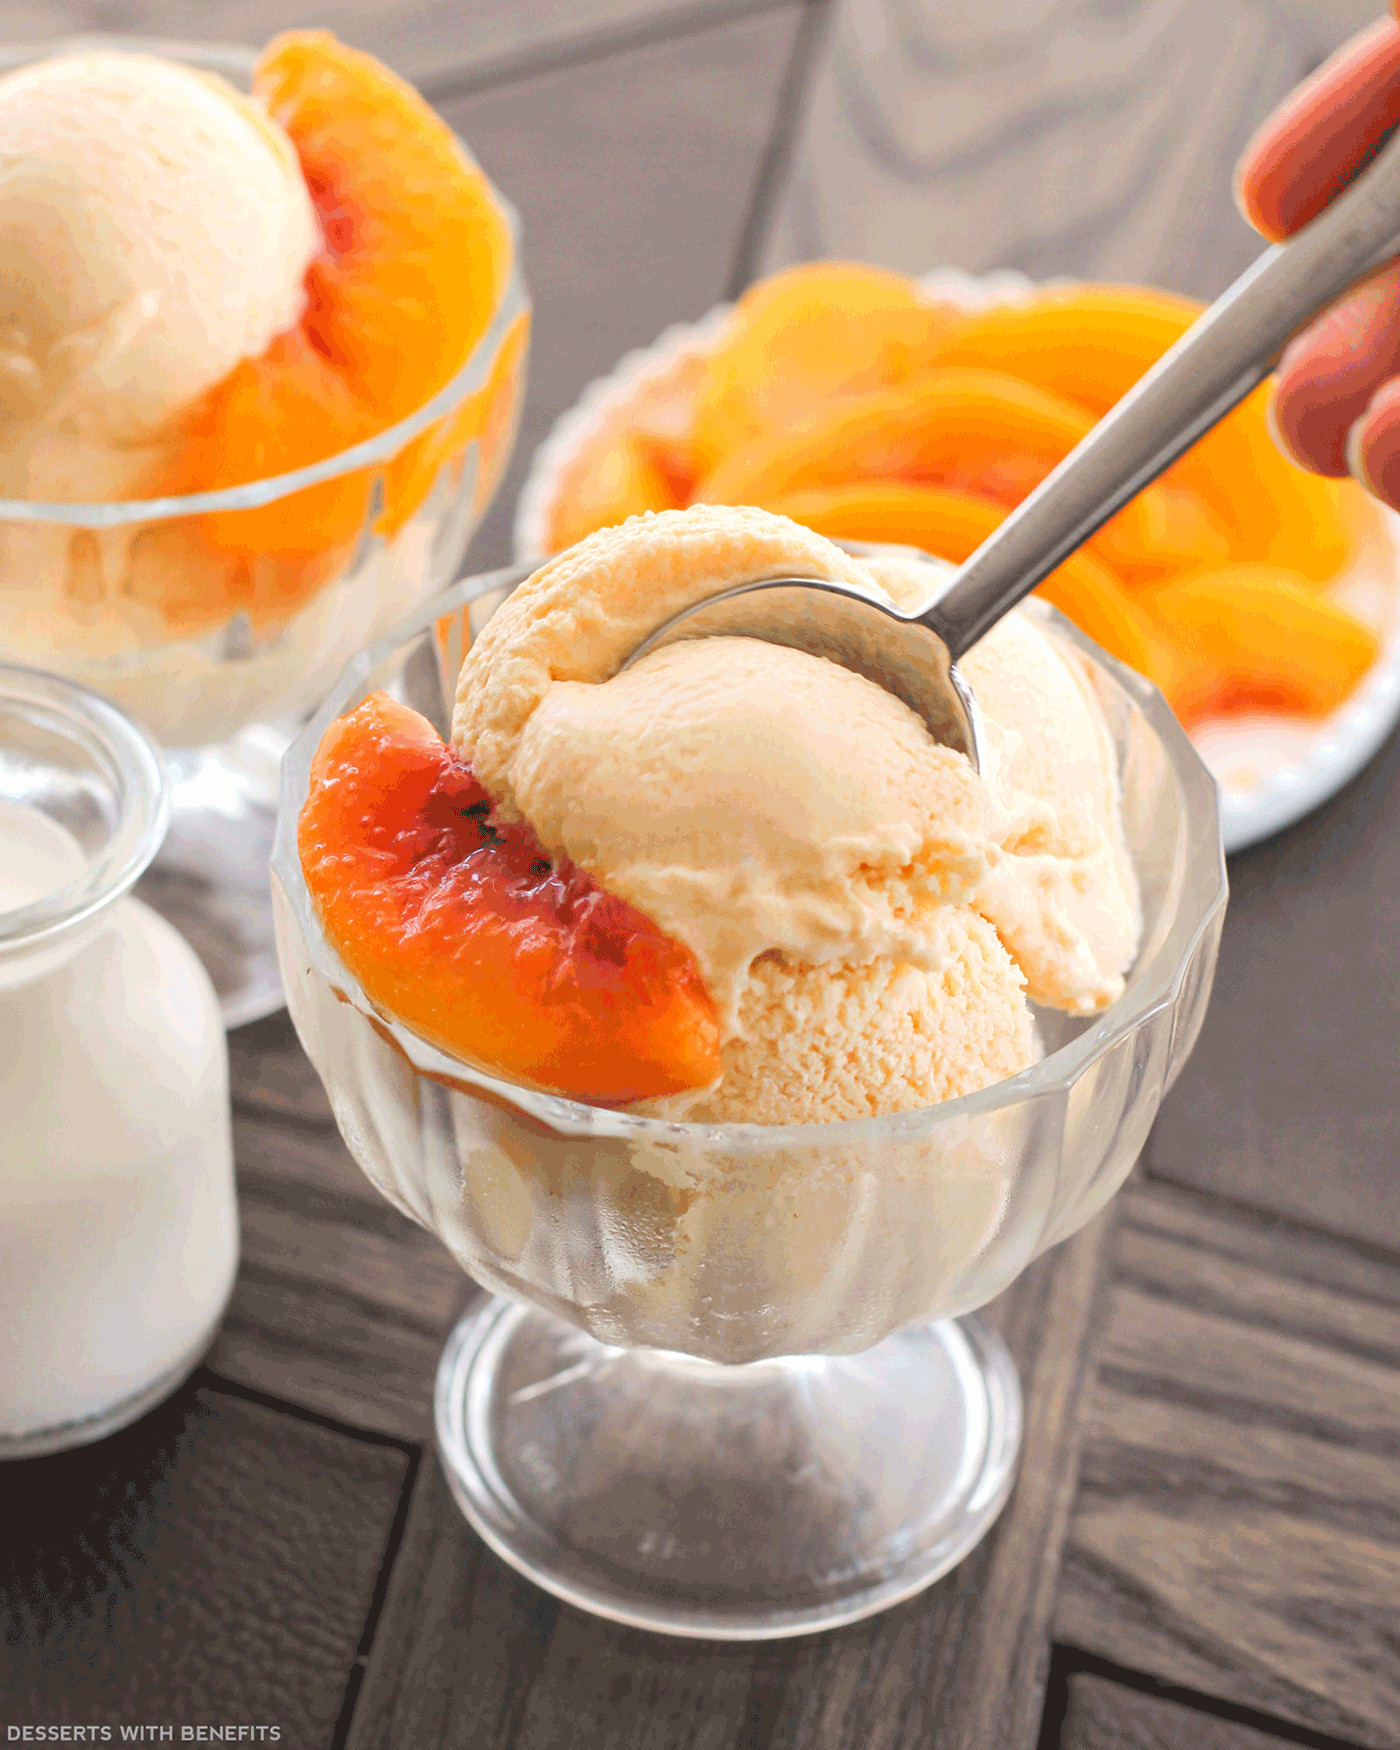 Healthy Peach Desserts
 Healthy Peaches and Cream Ice Cream Recipe No Sugar Added